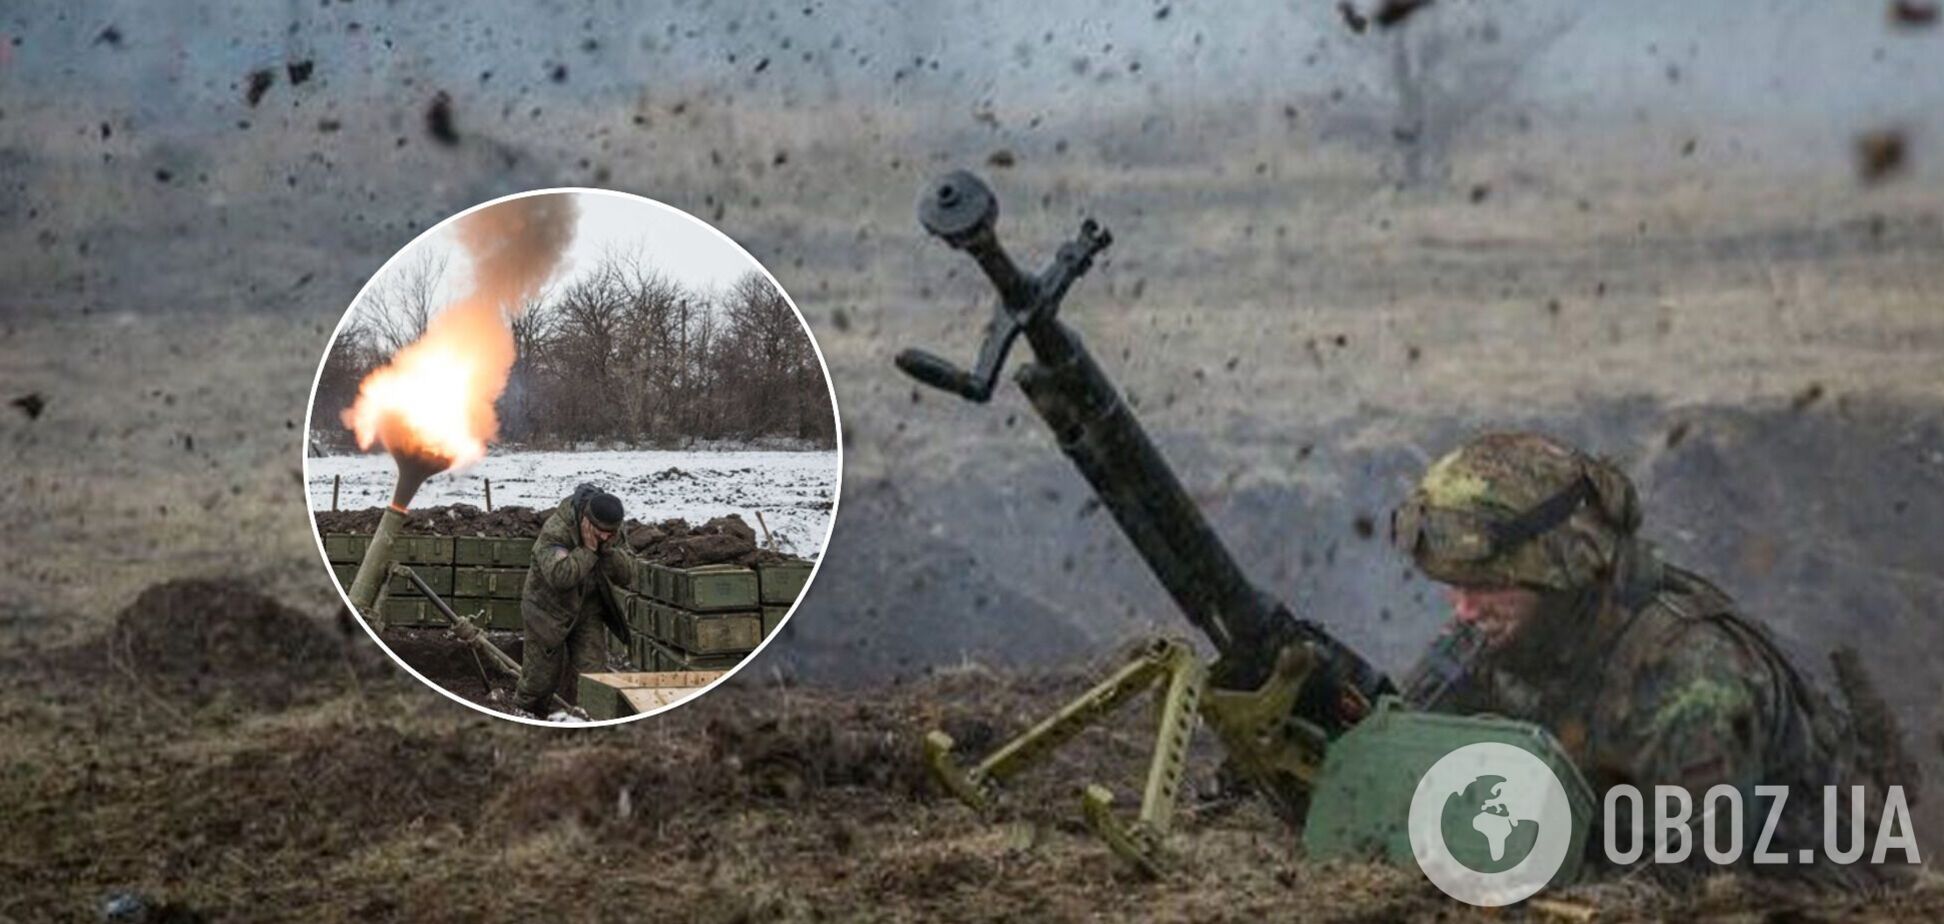 Российские оккупанты открыли огонь по ВСУ и ранили одного бойца